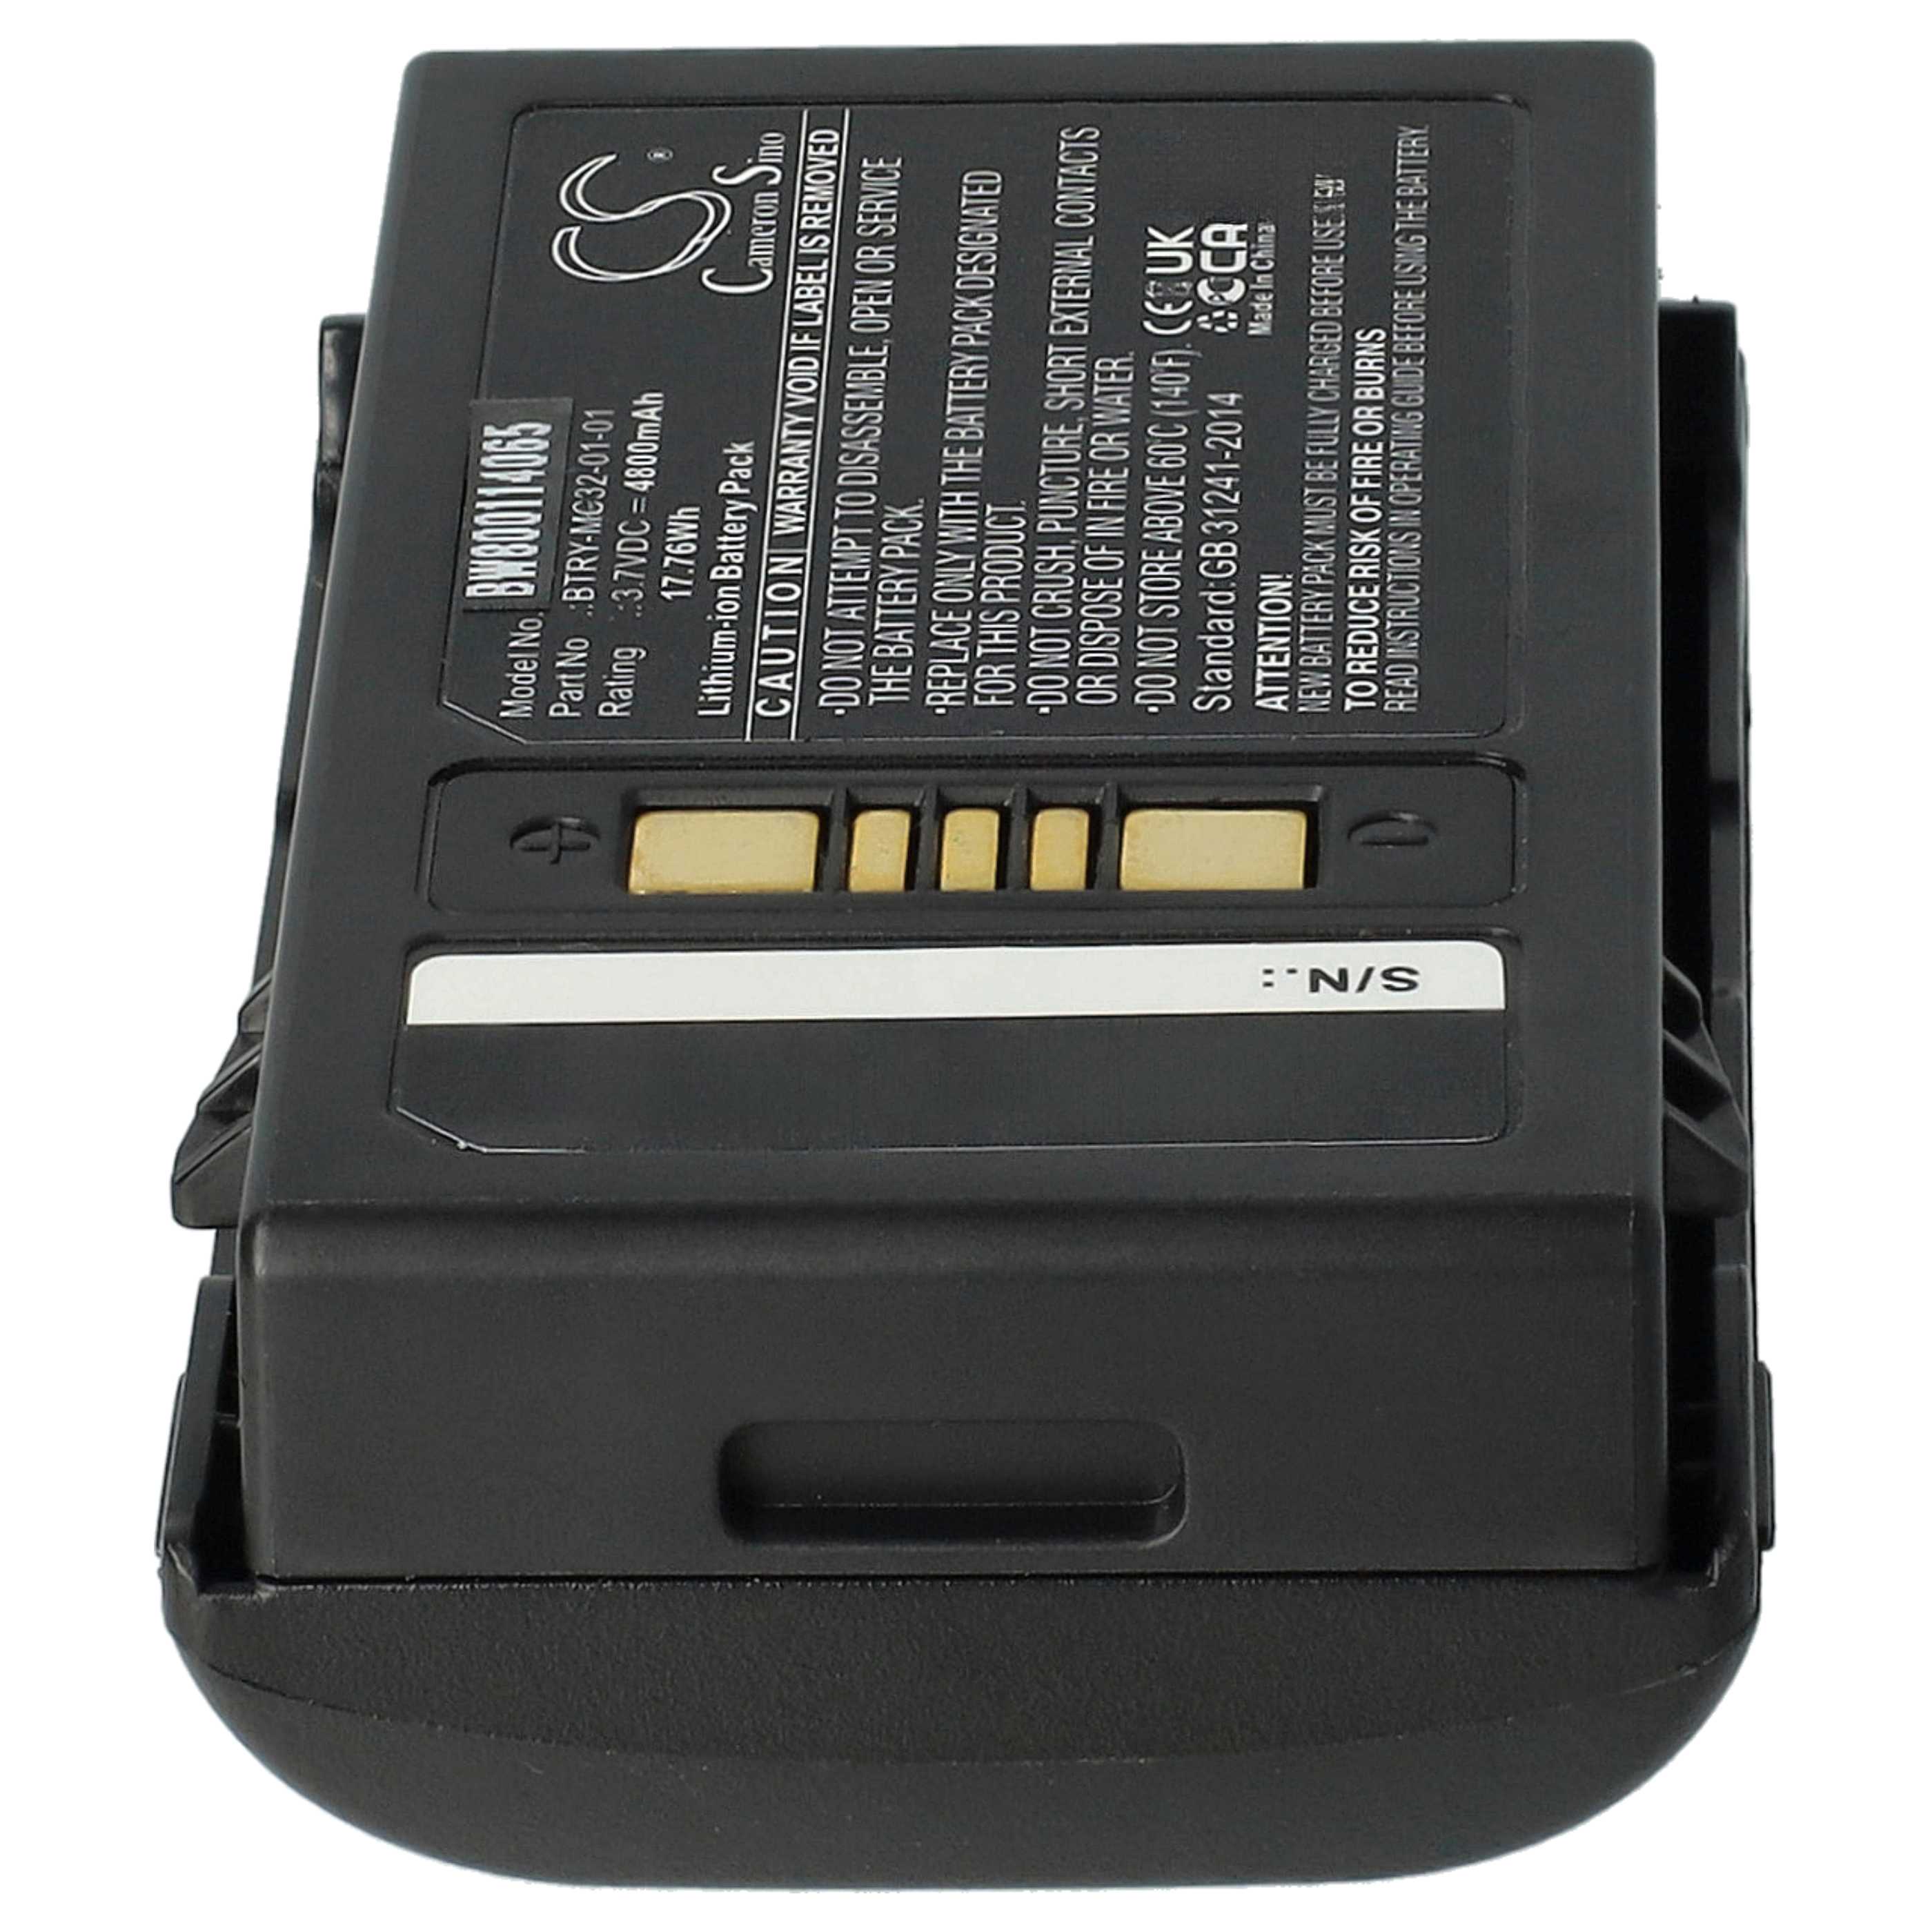 Barcodescanner-Akku als Ersatz für Motorola BTRY-MC32-01-01 - 4800mAh 3,7V Li-Ion